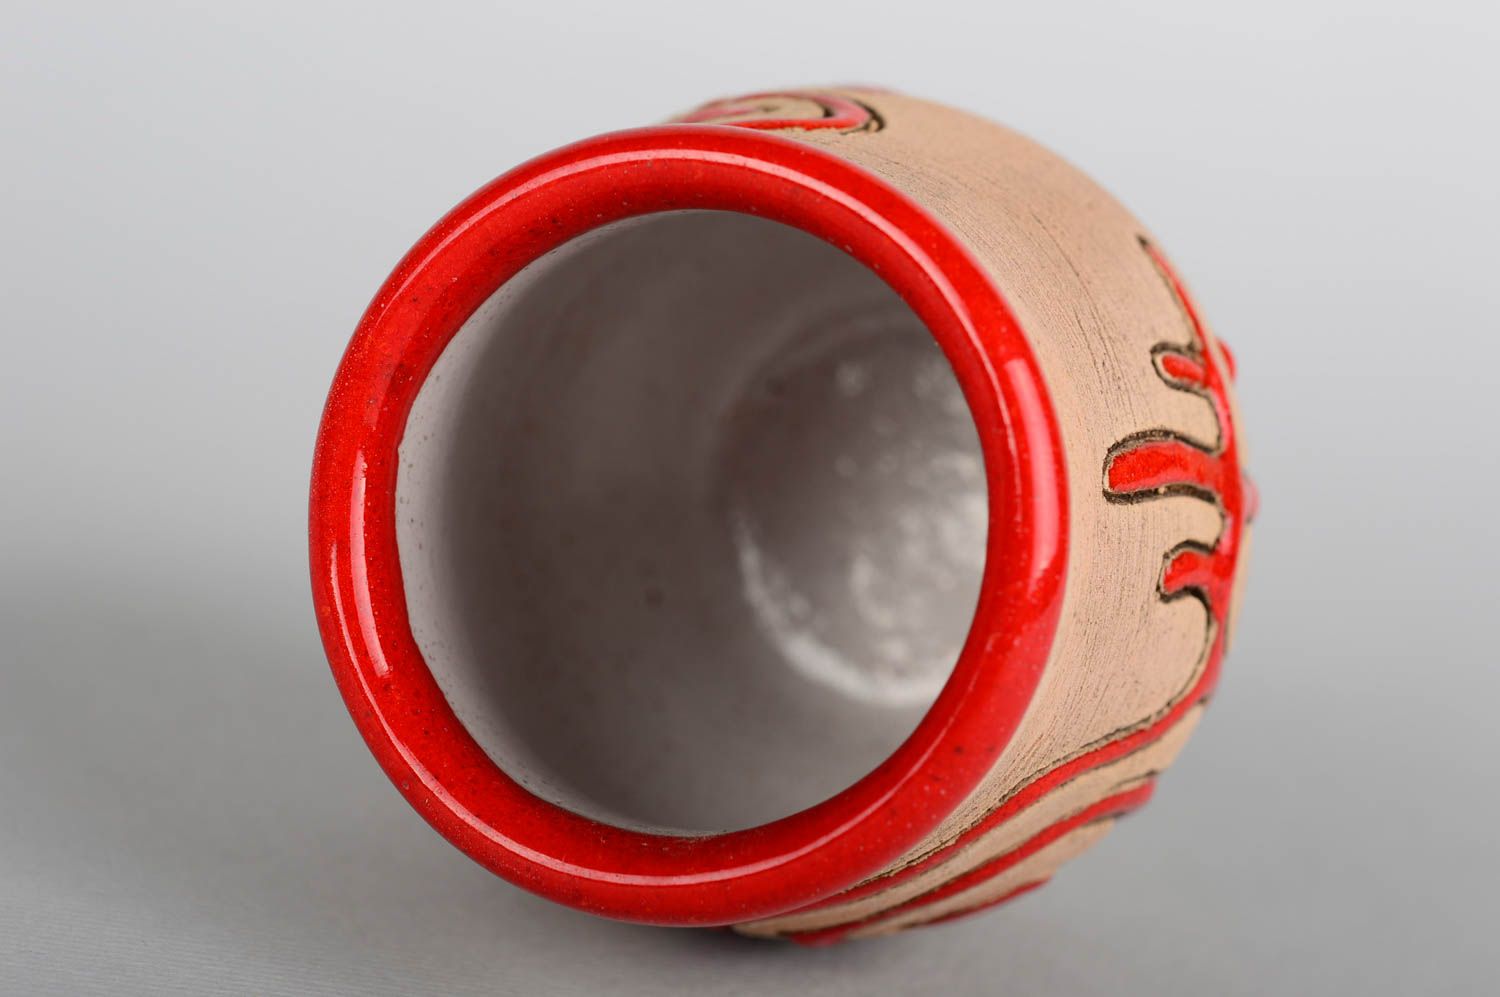 Vaso para chupito de cerámica hecho a mano utensilio de cocina regalo original foto 2